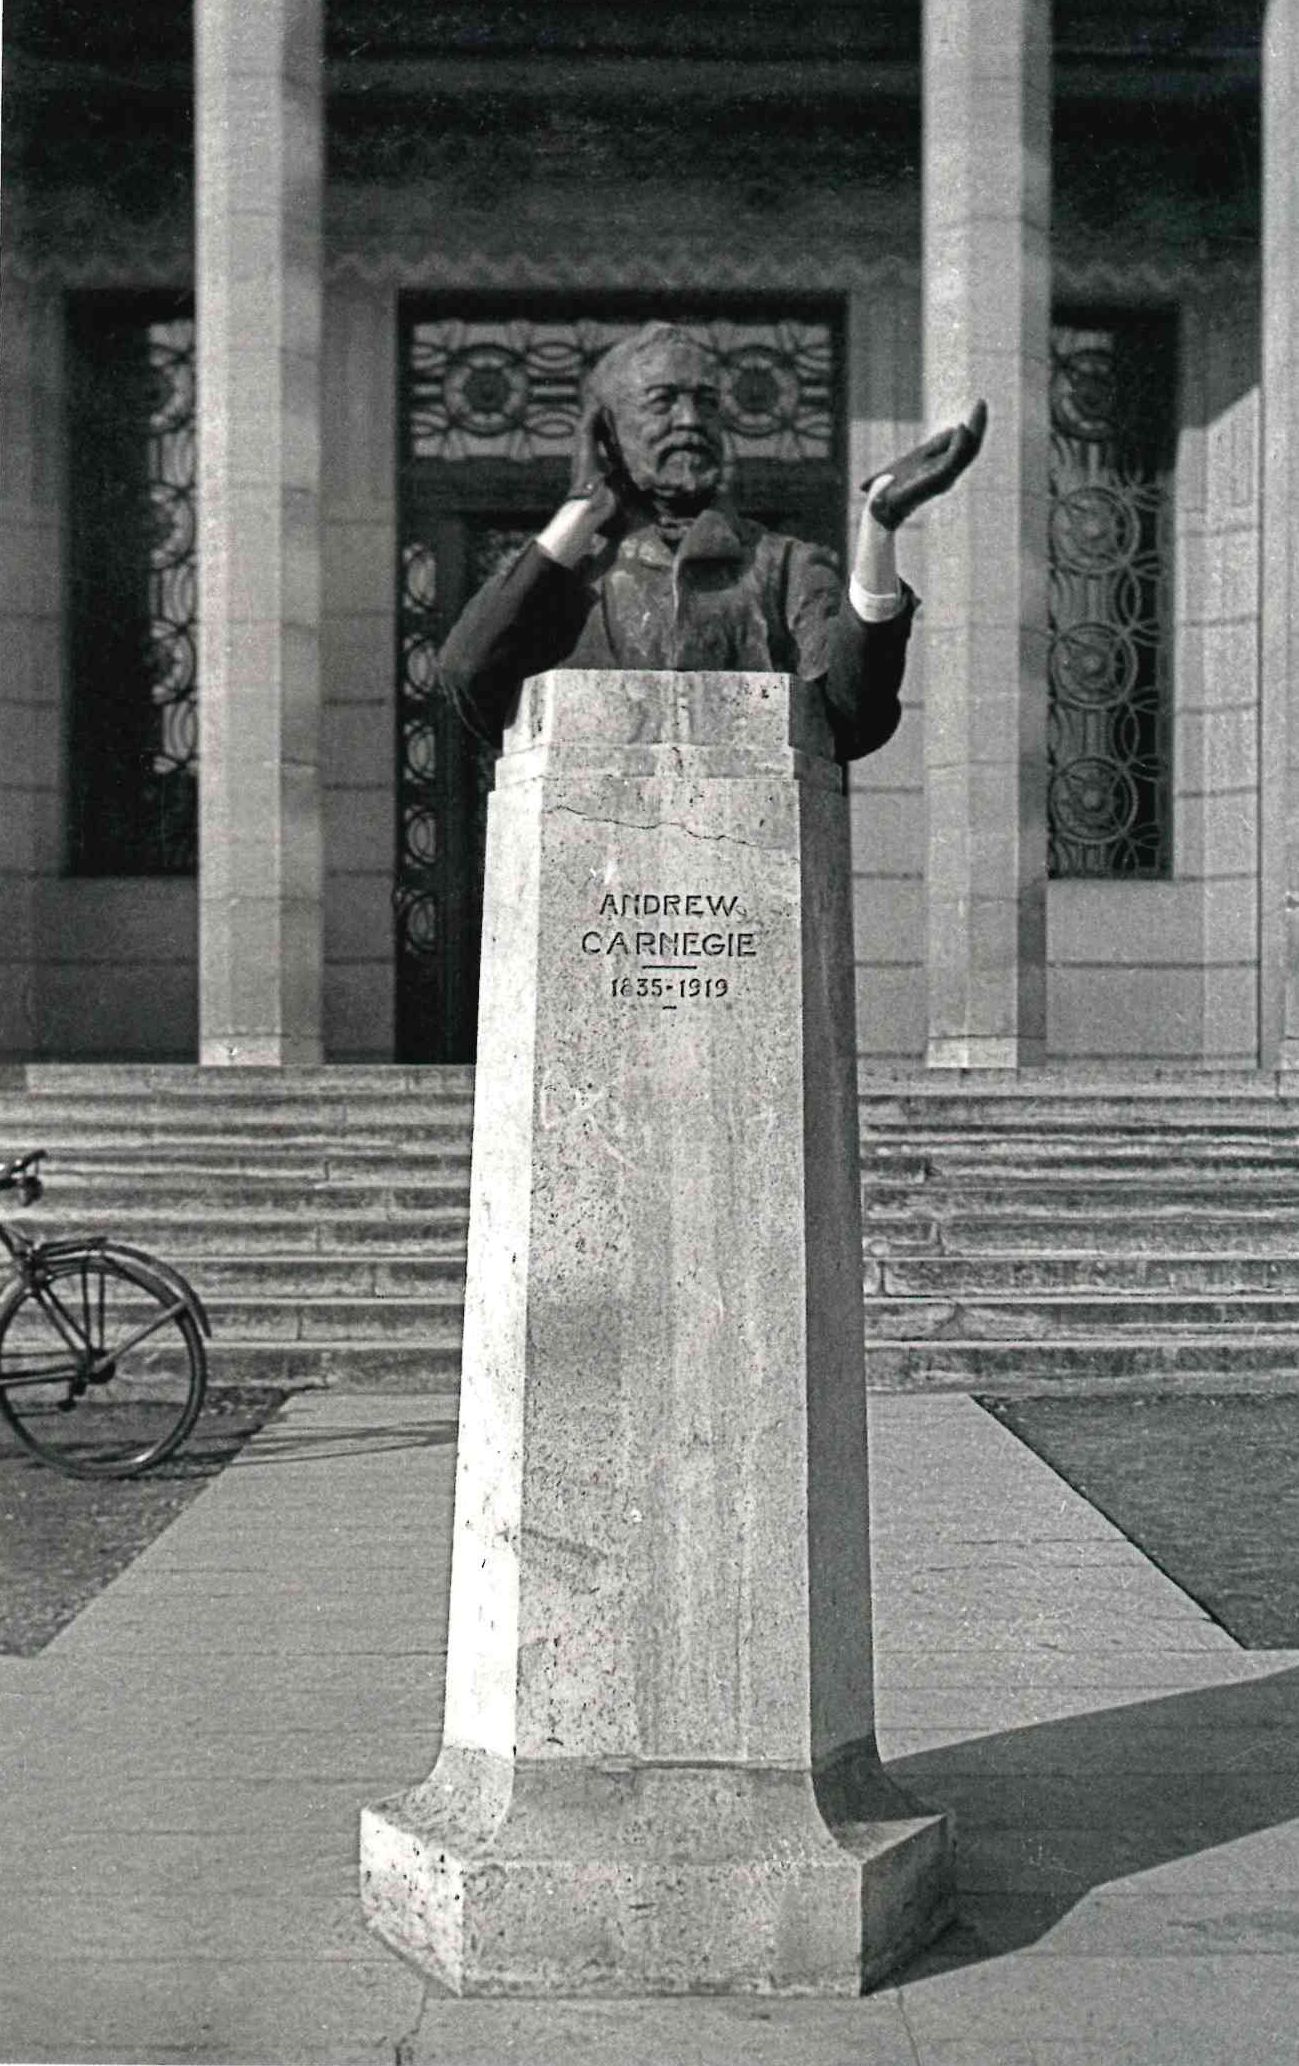 Novembre 2020 - Le buste d'Andrew Carnegie par Emmanuel Peillet. Reims. 1944. BM Reims, Fonds Rafaël de Luc, Album 4 - planche 10